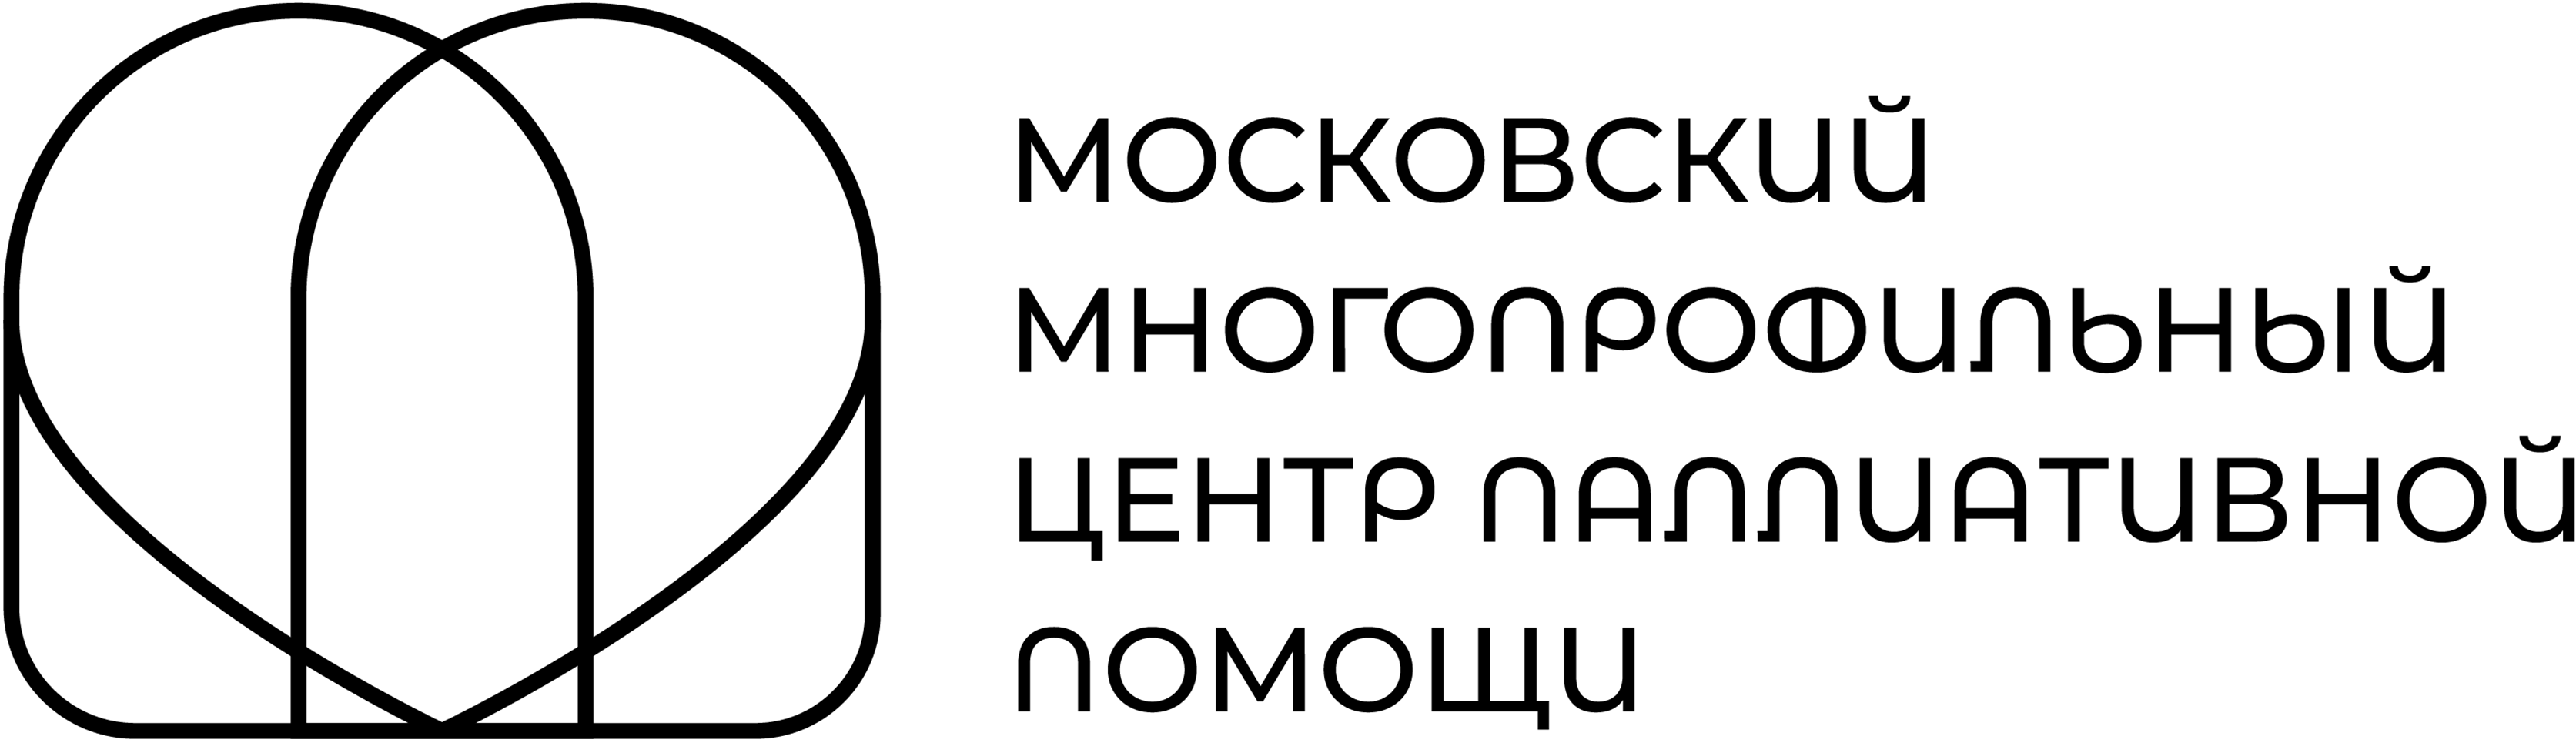 Московский многопрофильный центр паллиативной помощи. ГБУЗ центр паллиативной помощи ДЗМ. Логотип центра паллиативной помощи. Многопрофильный центр логотип.